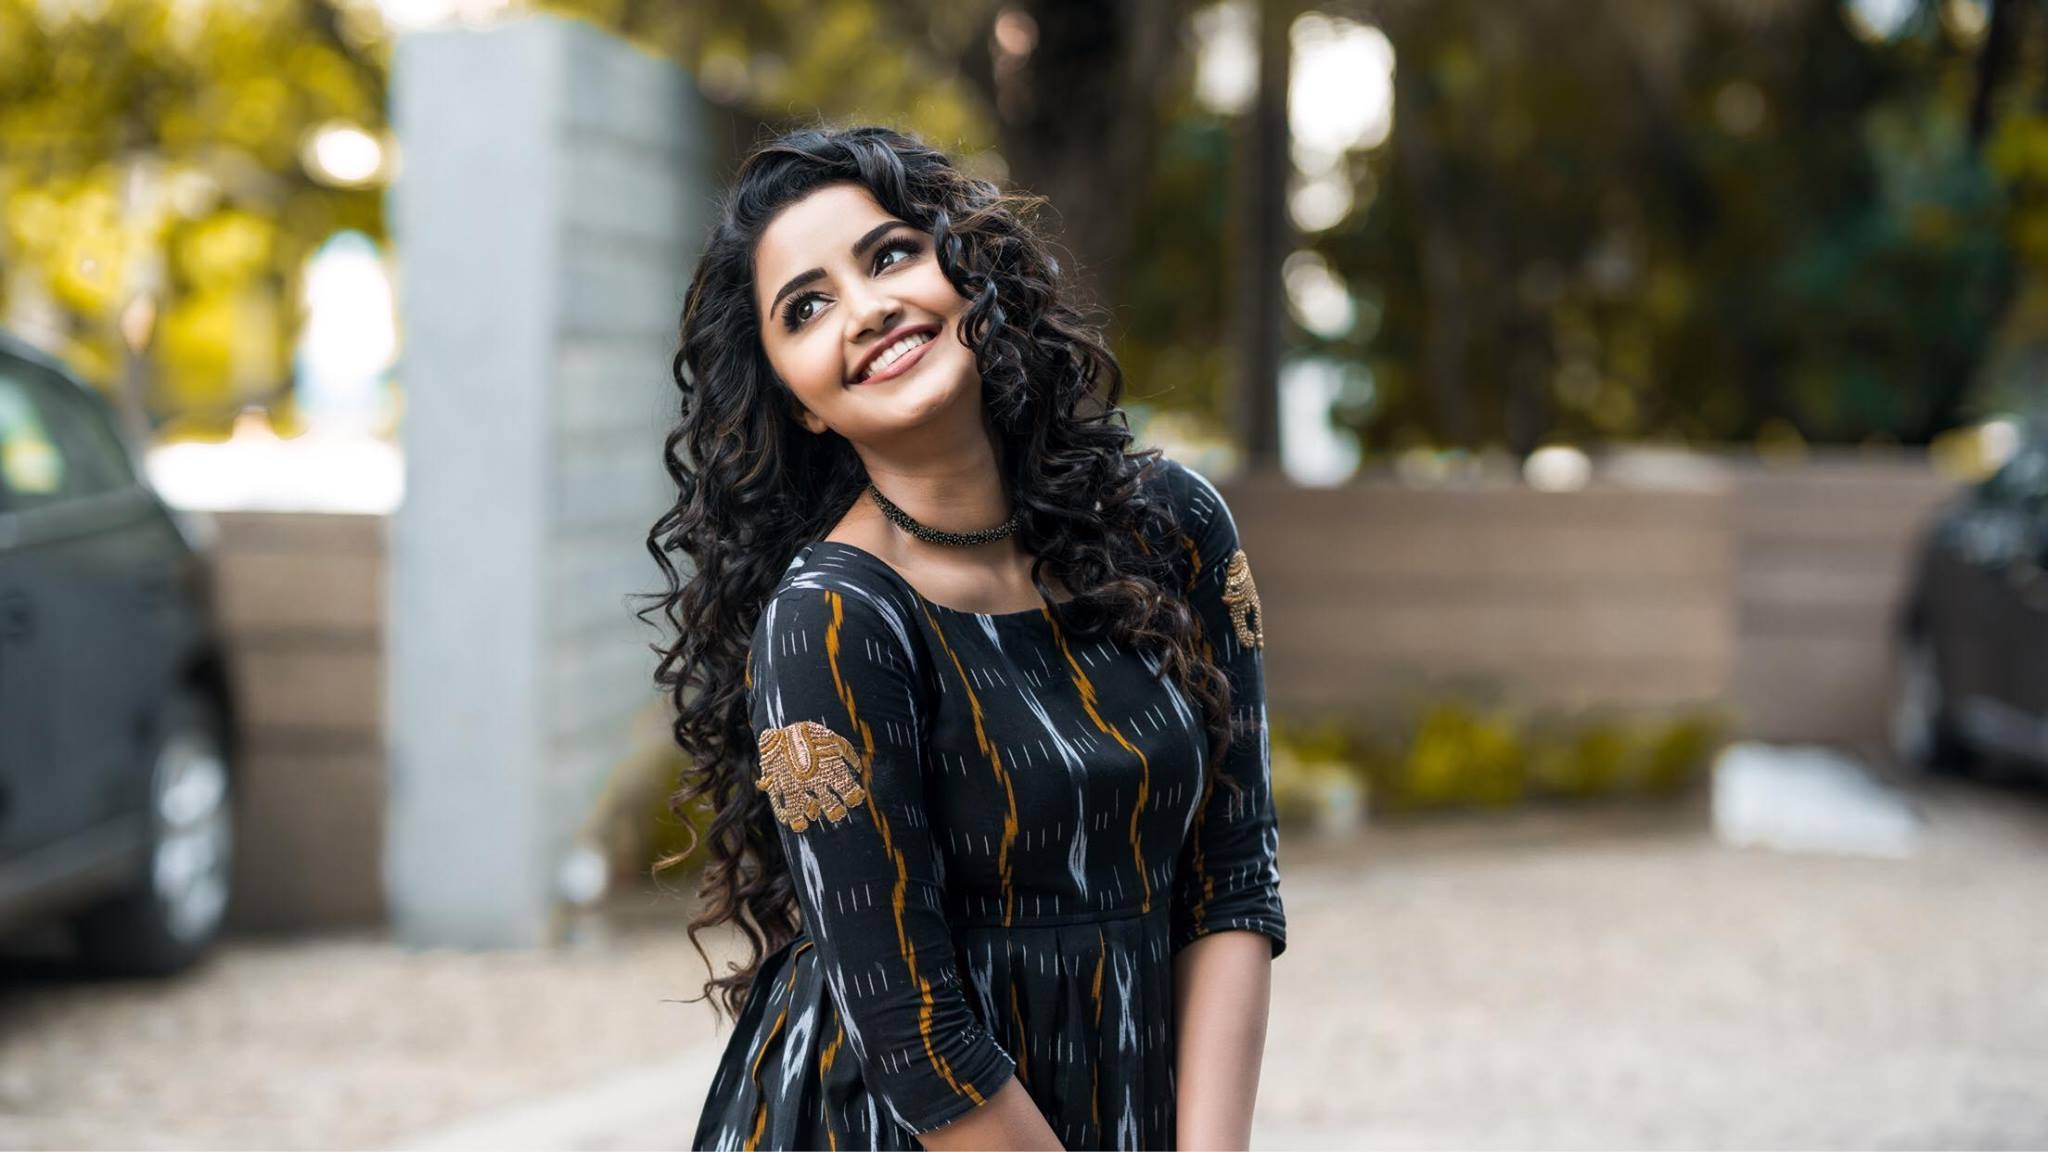 Wallpapers actress smiling Anupama Parameswaran on the desktop